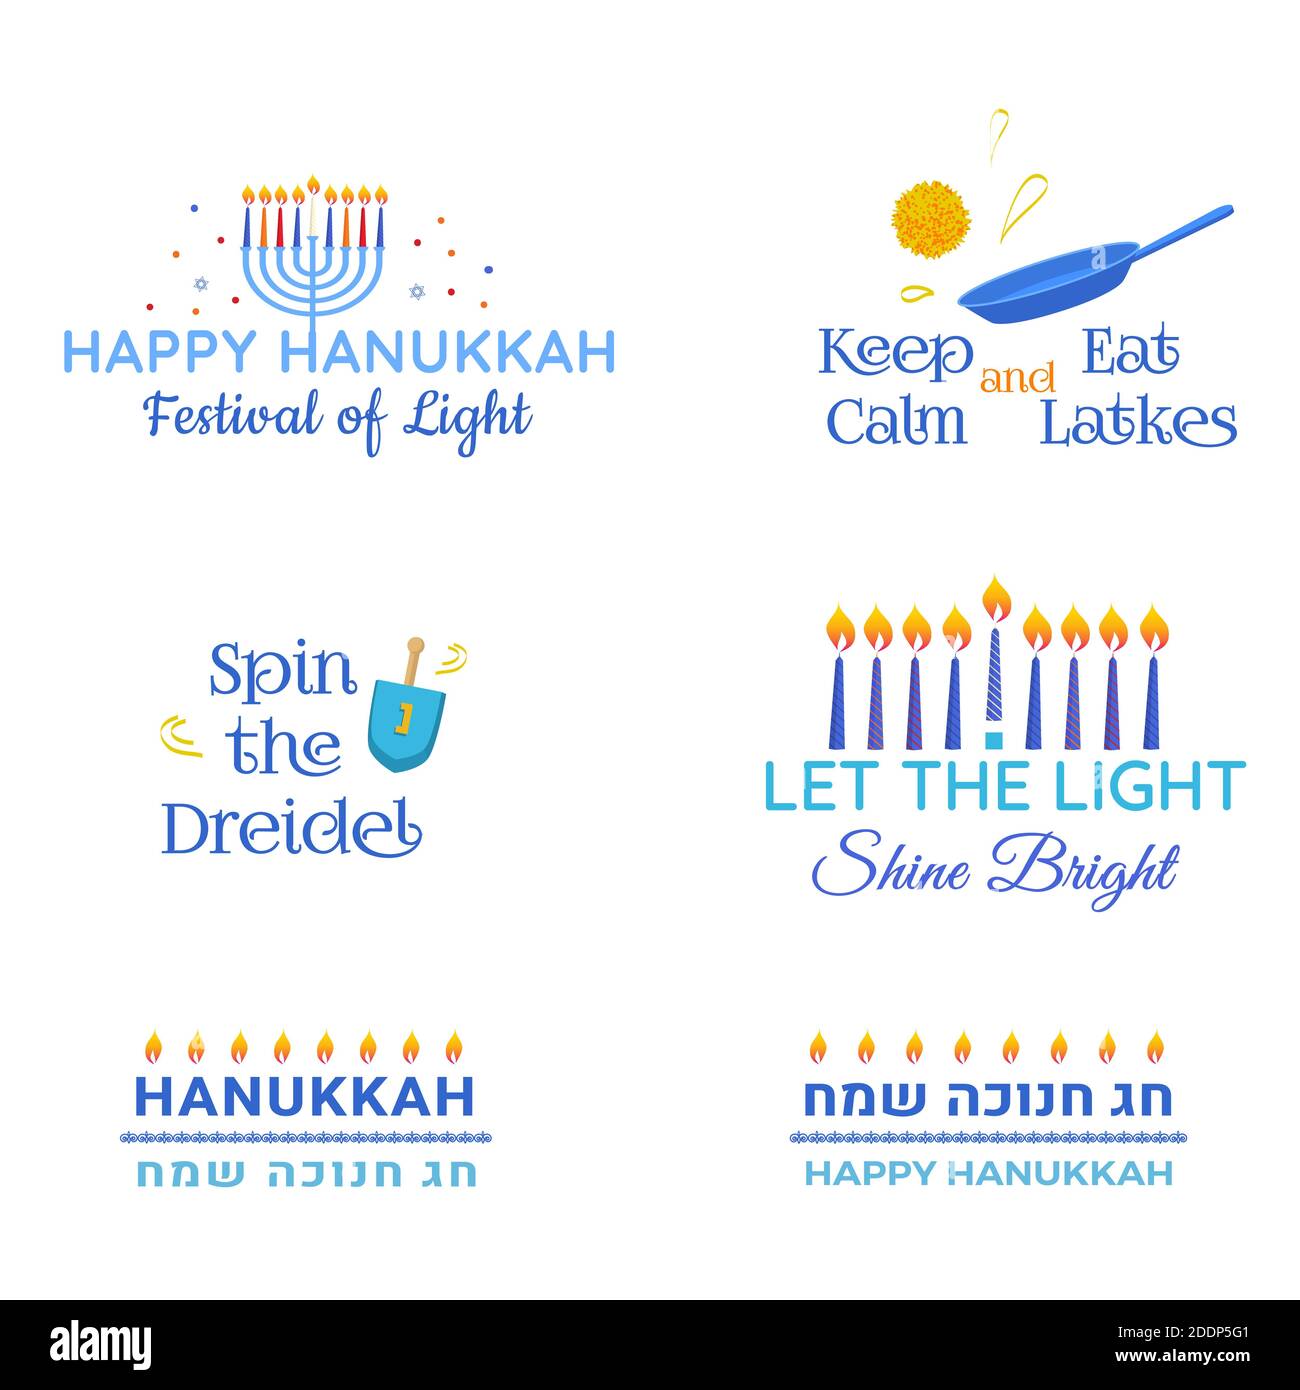 Hanukkah Vektor traditionelle jüdische Feiertag Phrasen Typografie Anführungszeichen gesetzt. Frohes Chanukka auf Hebräisch. Stock Vektor